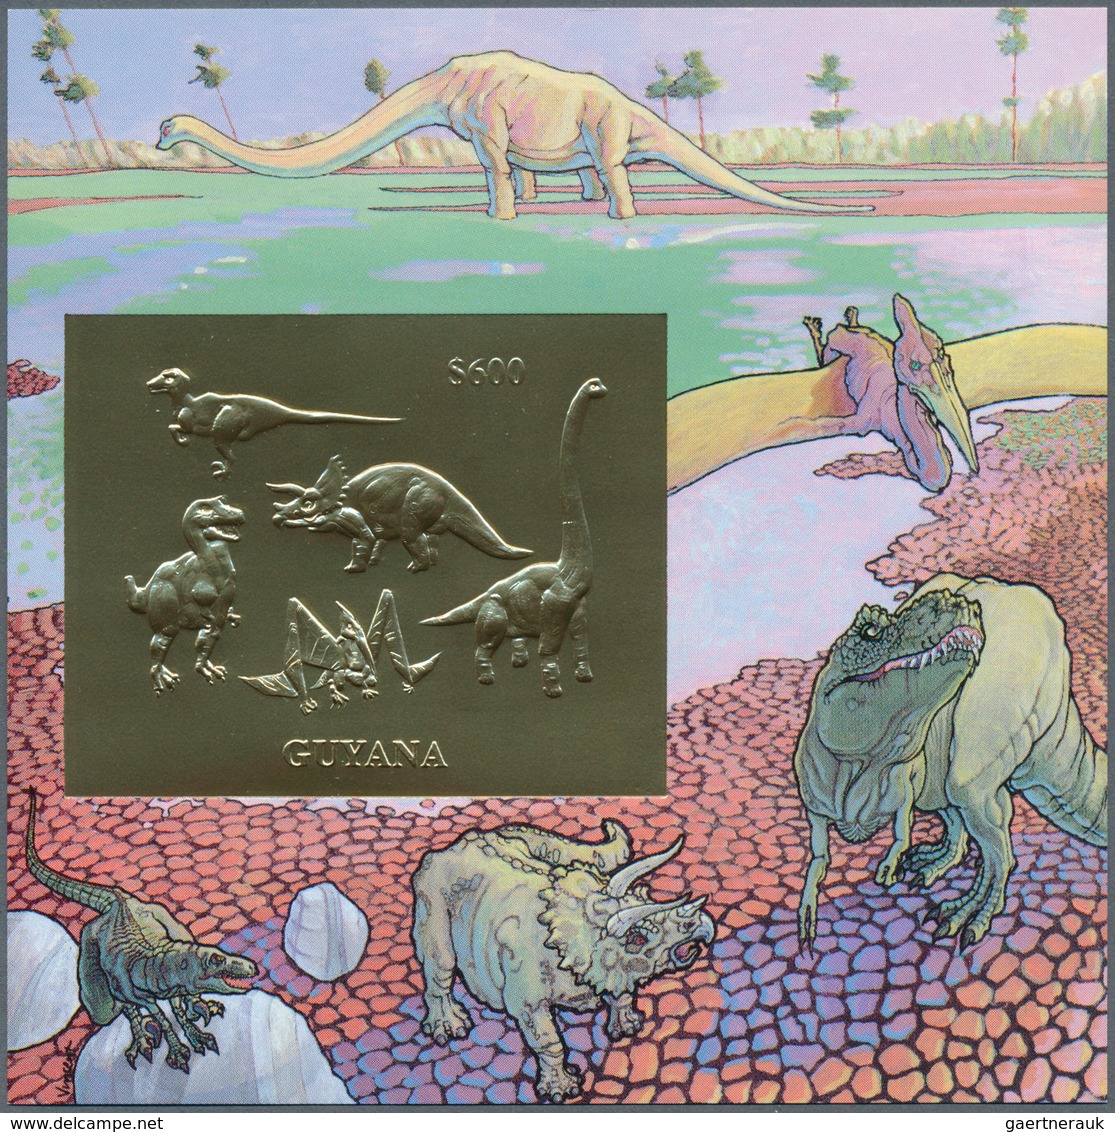 25688 Thematik: Tiere-Dinosaurier / Animals-dinosaur: 1993, Guyana. Lot Of 100 GOLD Dinosaur Blocks Contai - Vor- U. Frühgeschichte